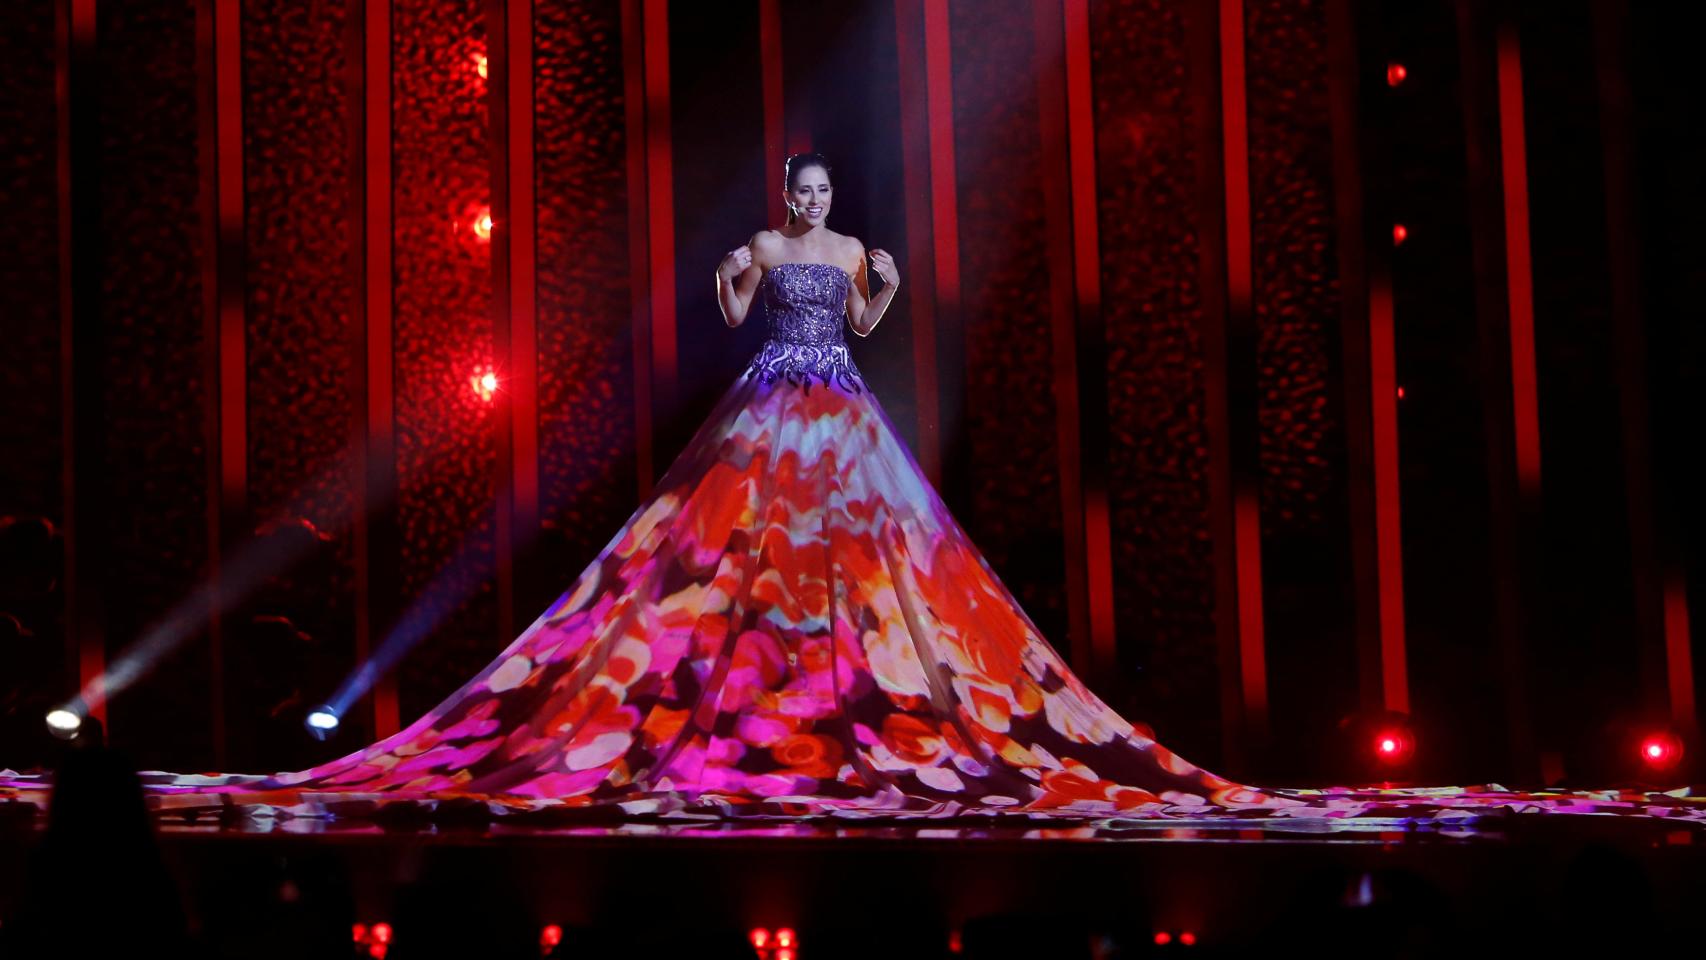 Los momentos más curiosos de Eurovisión, en imágenes